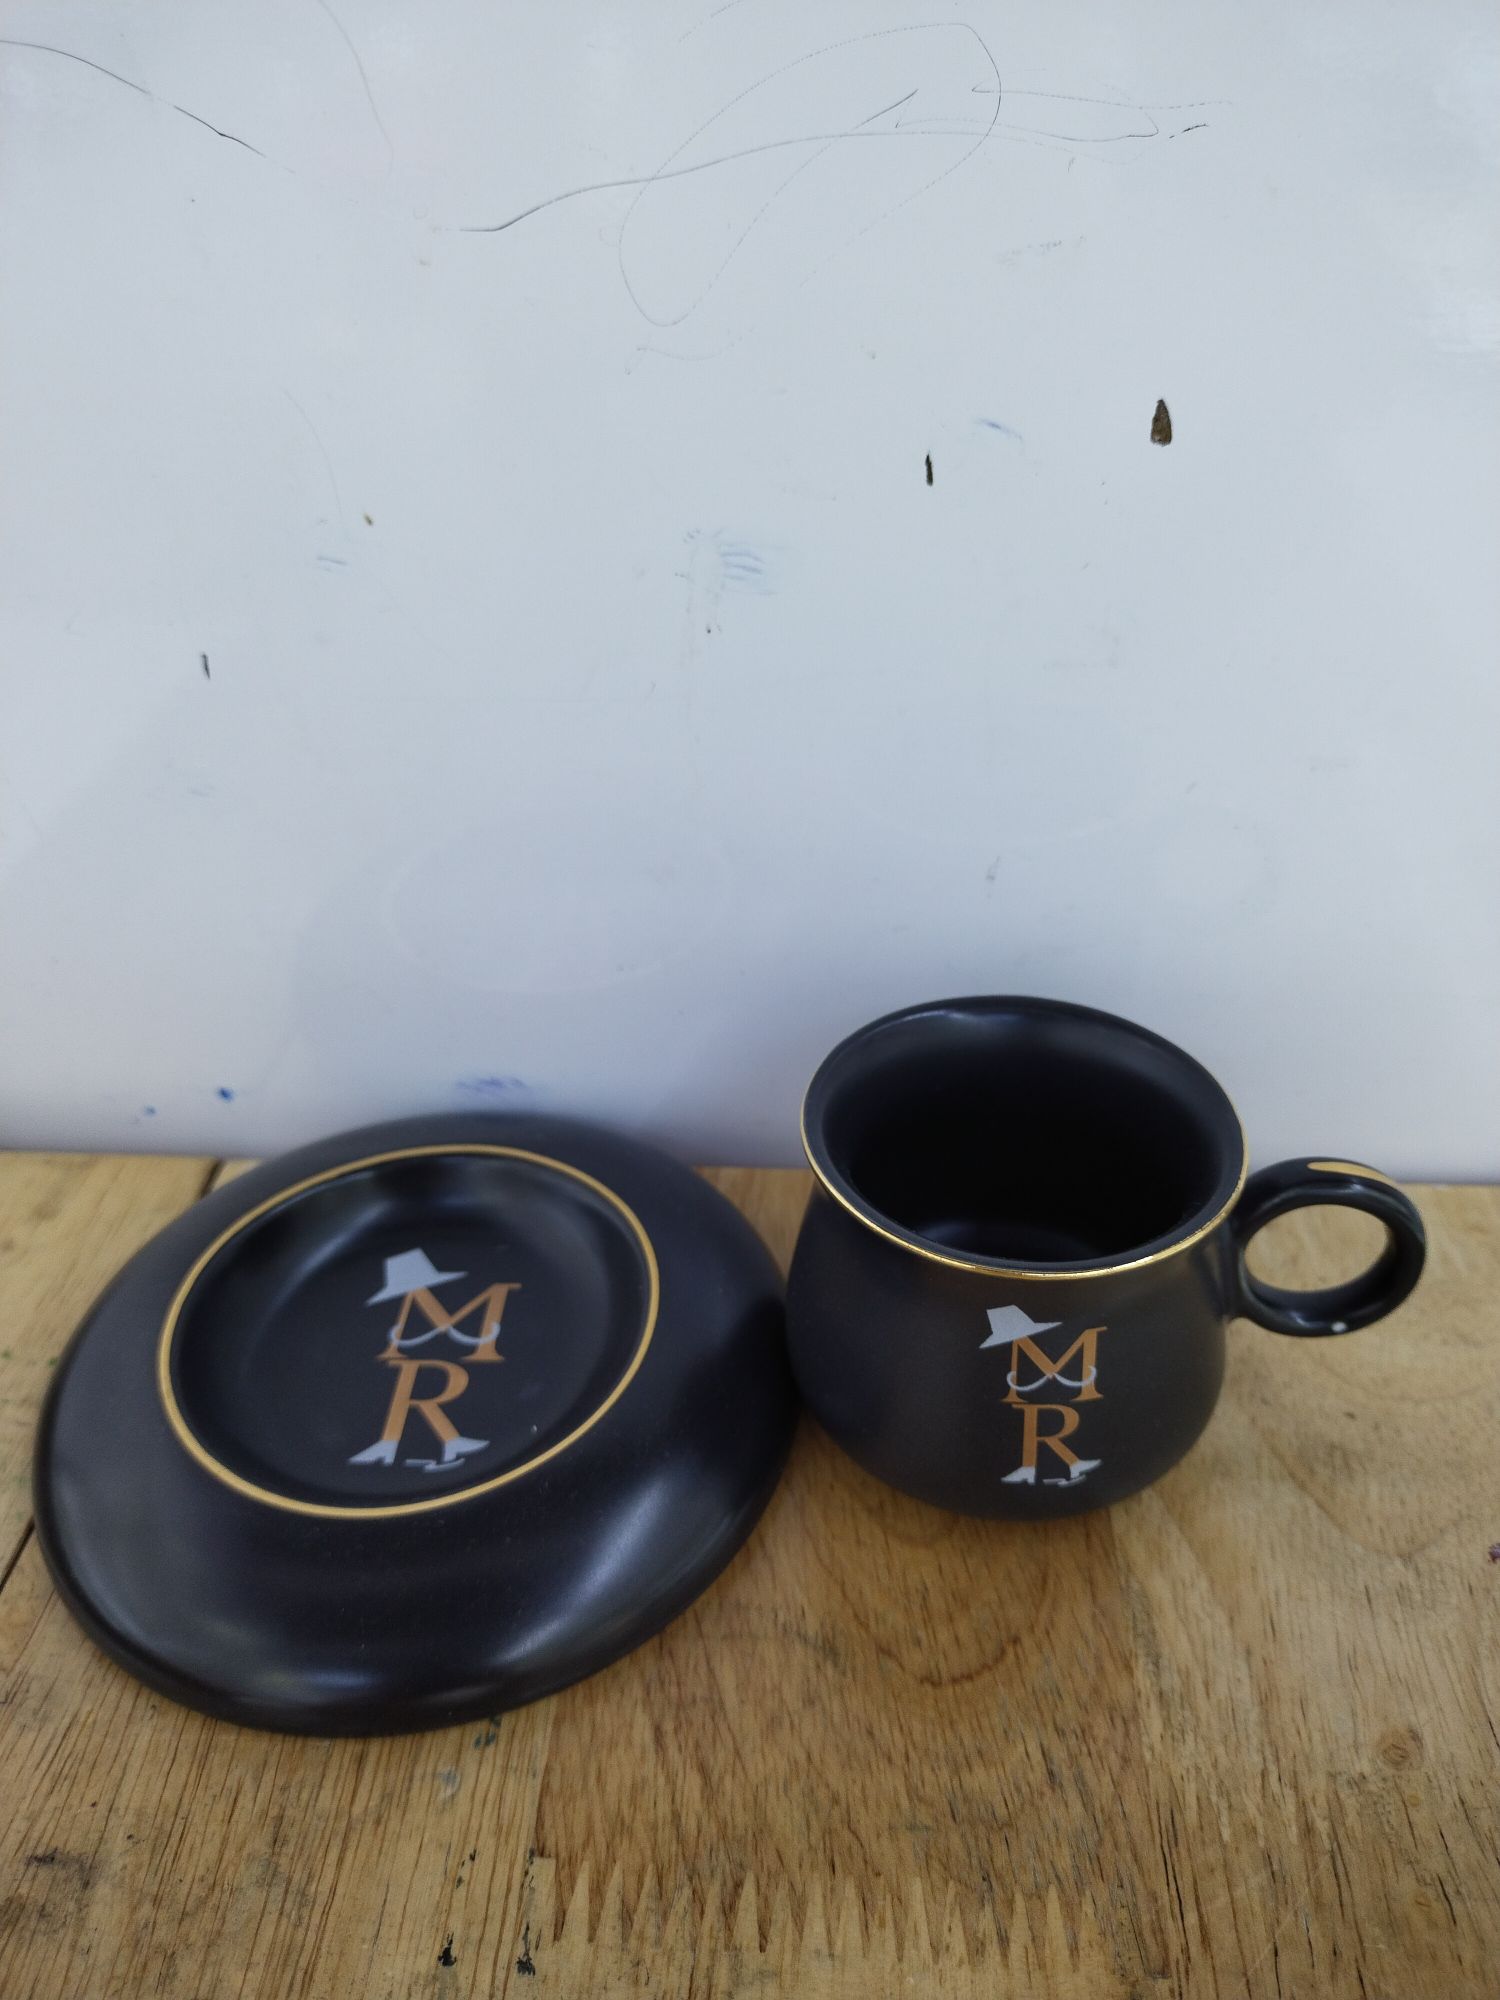 丽玫陶瓷奢华下午茶咖啡六杯碟黑色百搭新款礼盒包装0079图